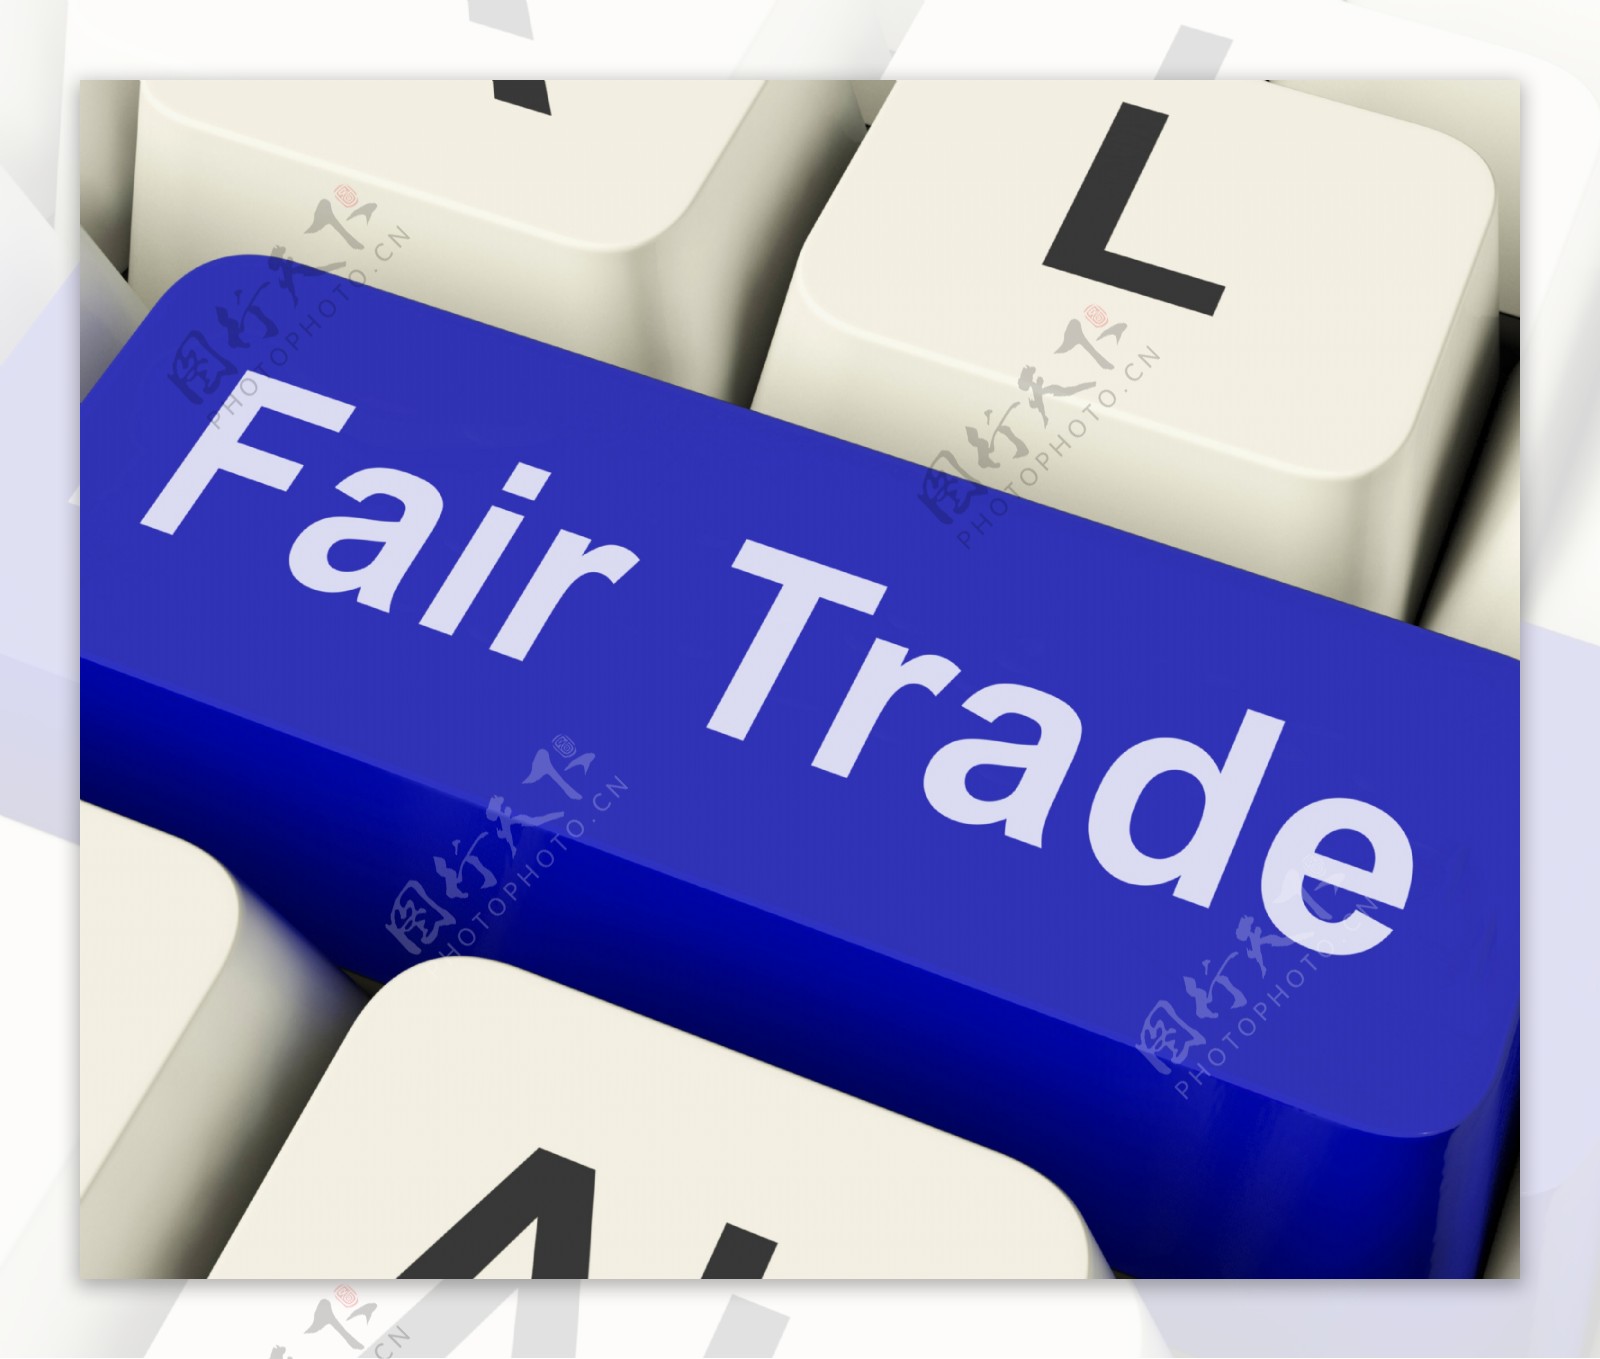 公平贸易键显示公平贸易产品或产品